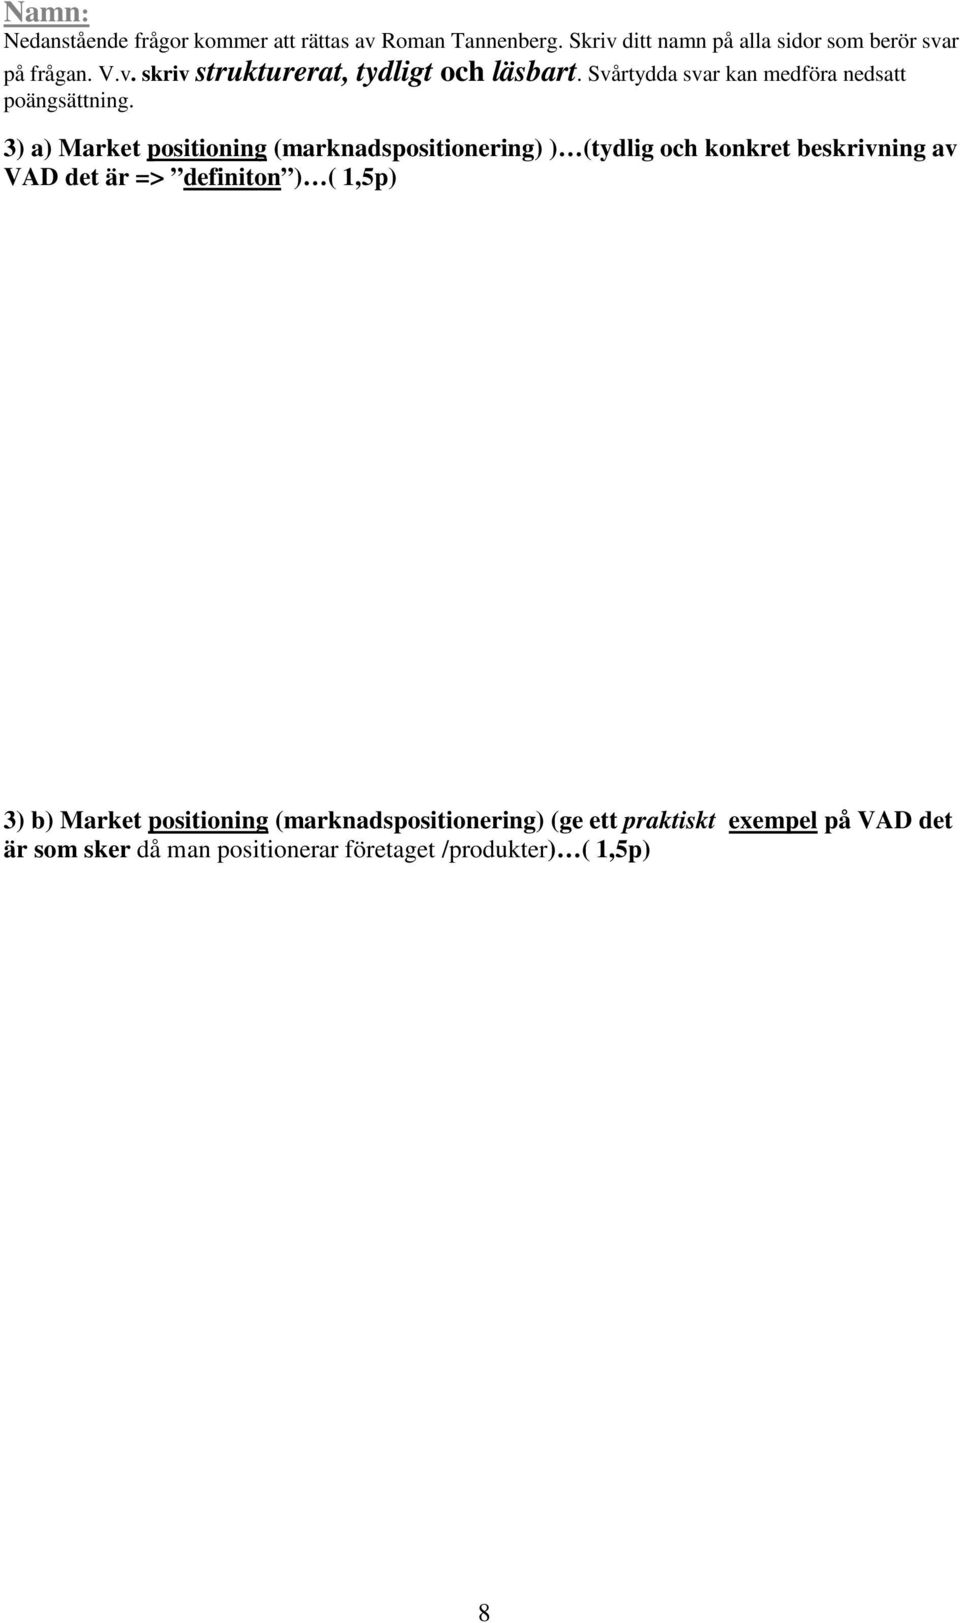 Market positioning (marknadspositionering) (ge ett praktiskt